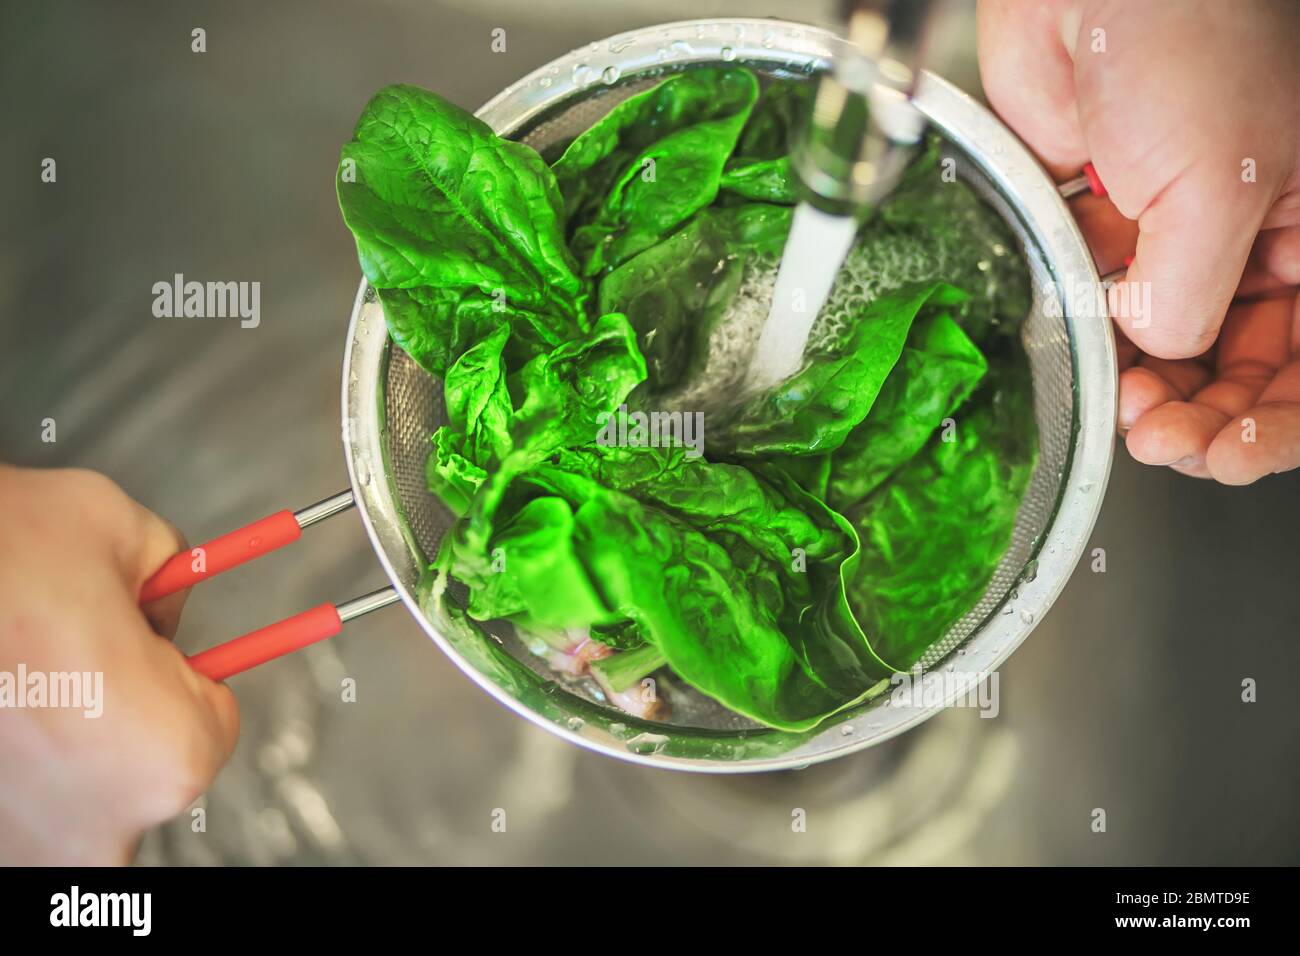 Eine Person wäscht die Blätter von grünem reifen Spinat in einem Sieb unter einem Strom von sauberem Wasser aus dem Wasserhahn. Zutat zum Kochen. Stockfoto